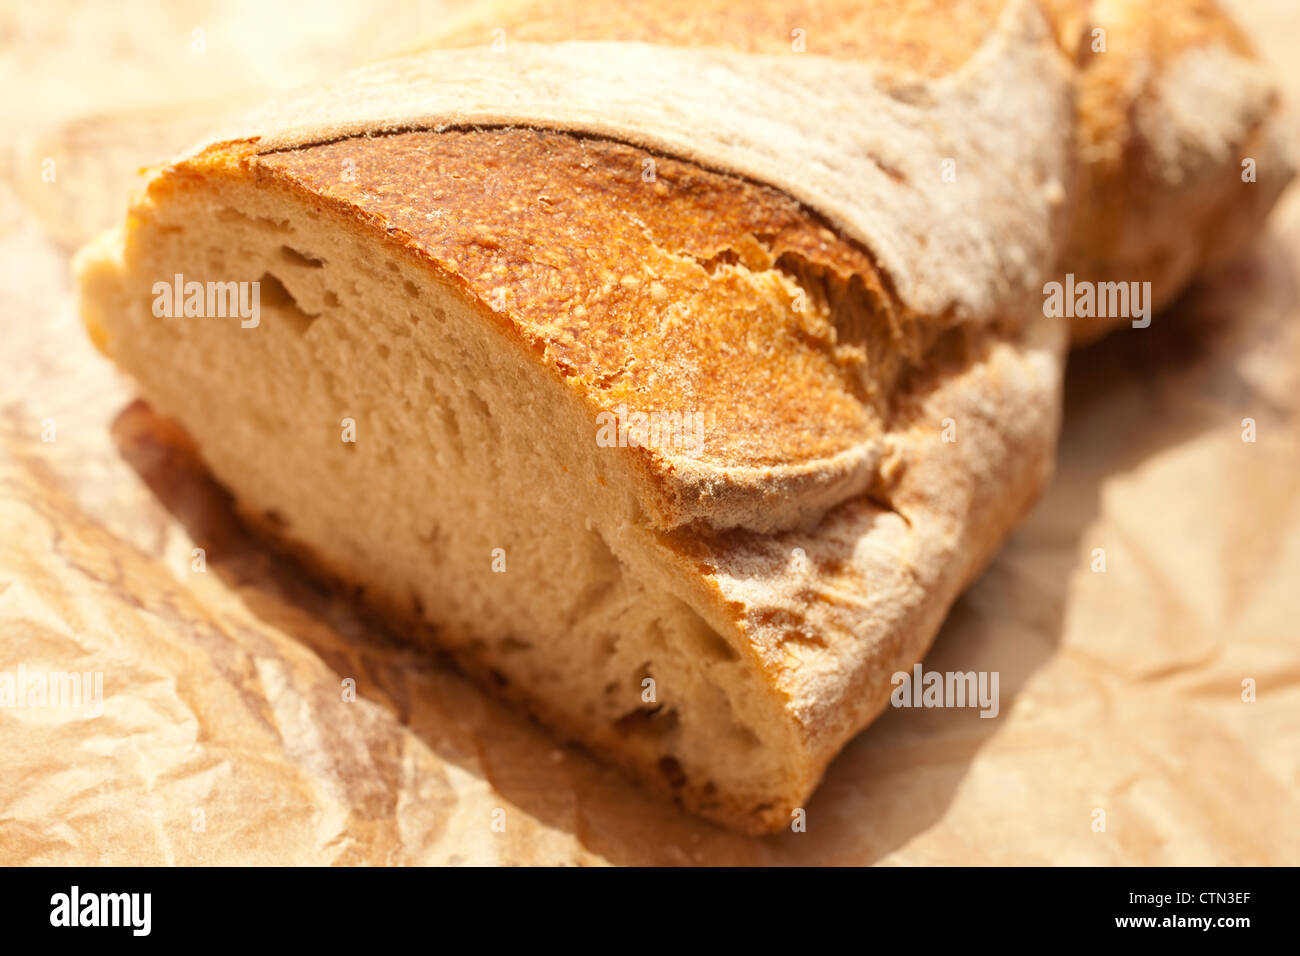 L'italien, du pain artisanal Banque D'Images